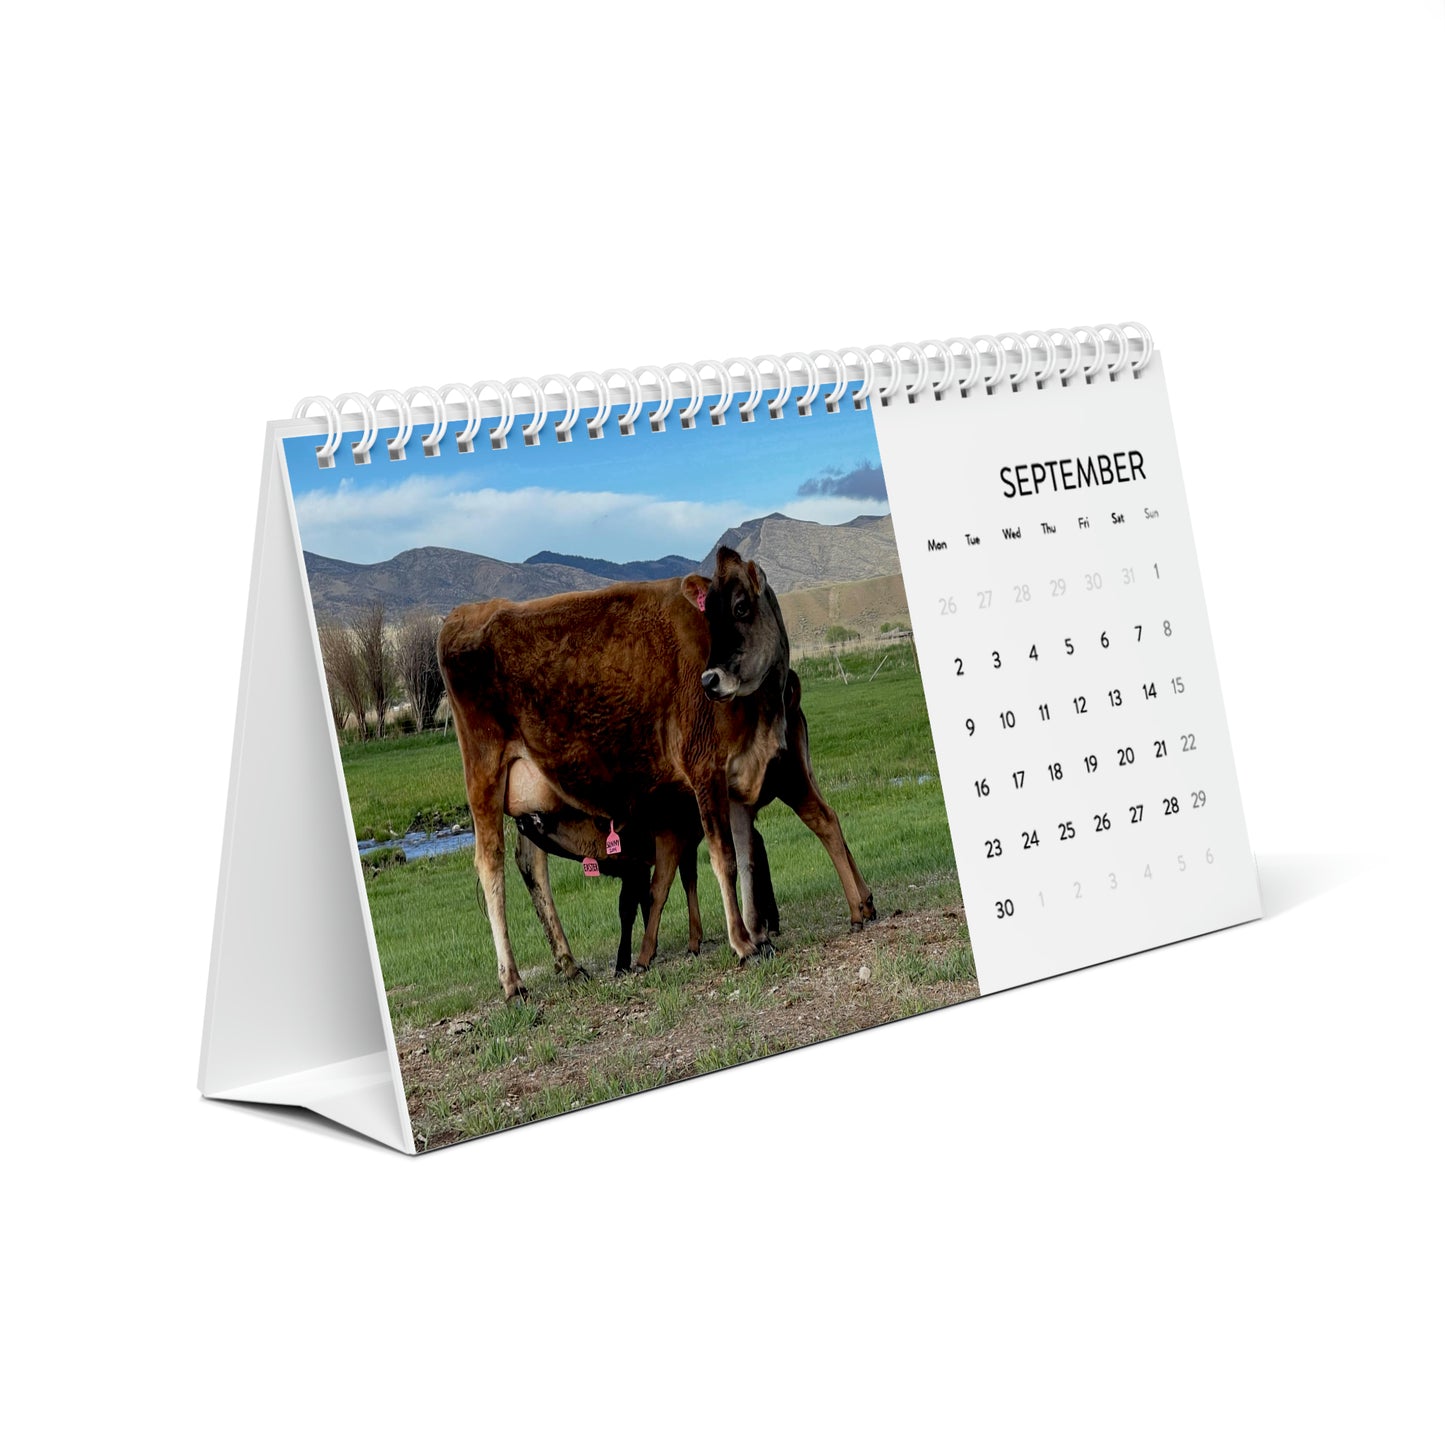 Cute Calves - 2024 Desk Calendar